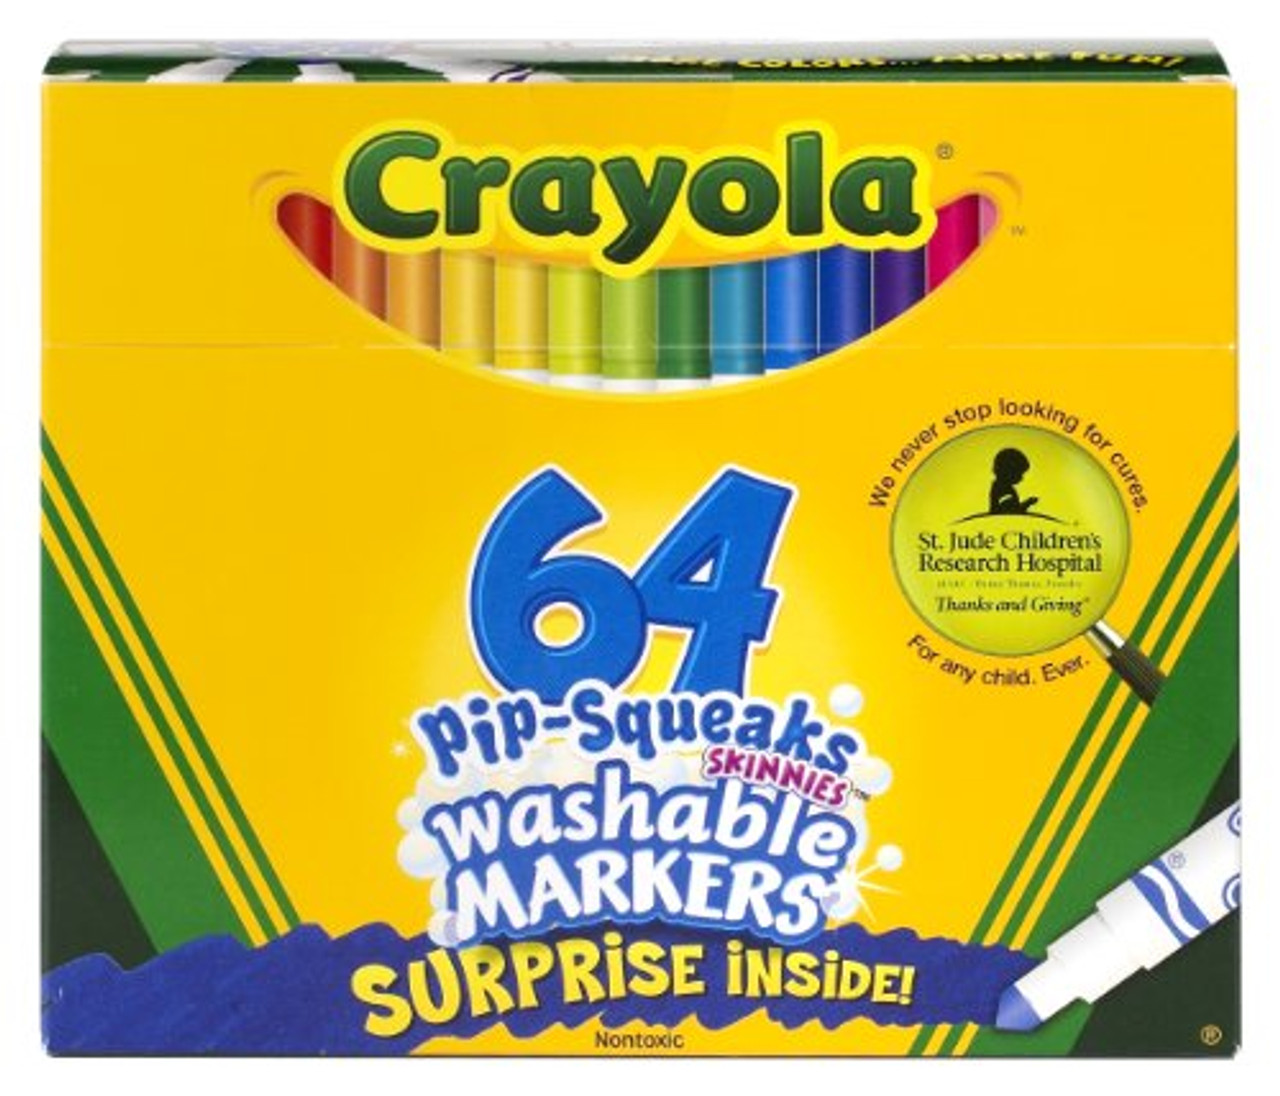 Washable Marker Set, 64 Coloring Supplies, Crayola.com